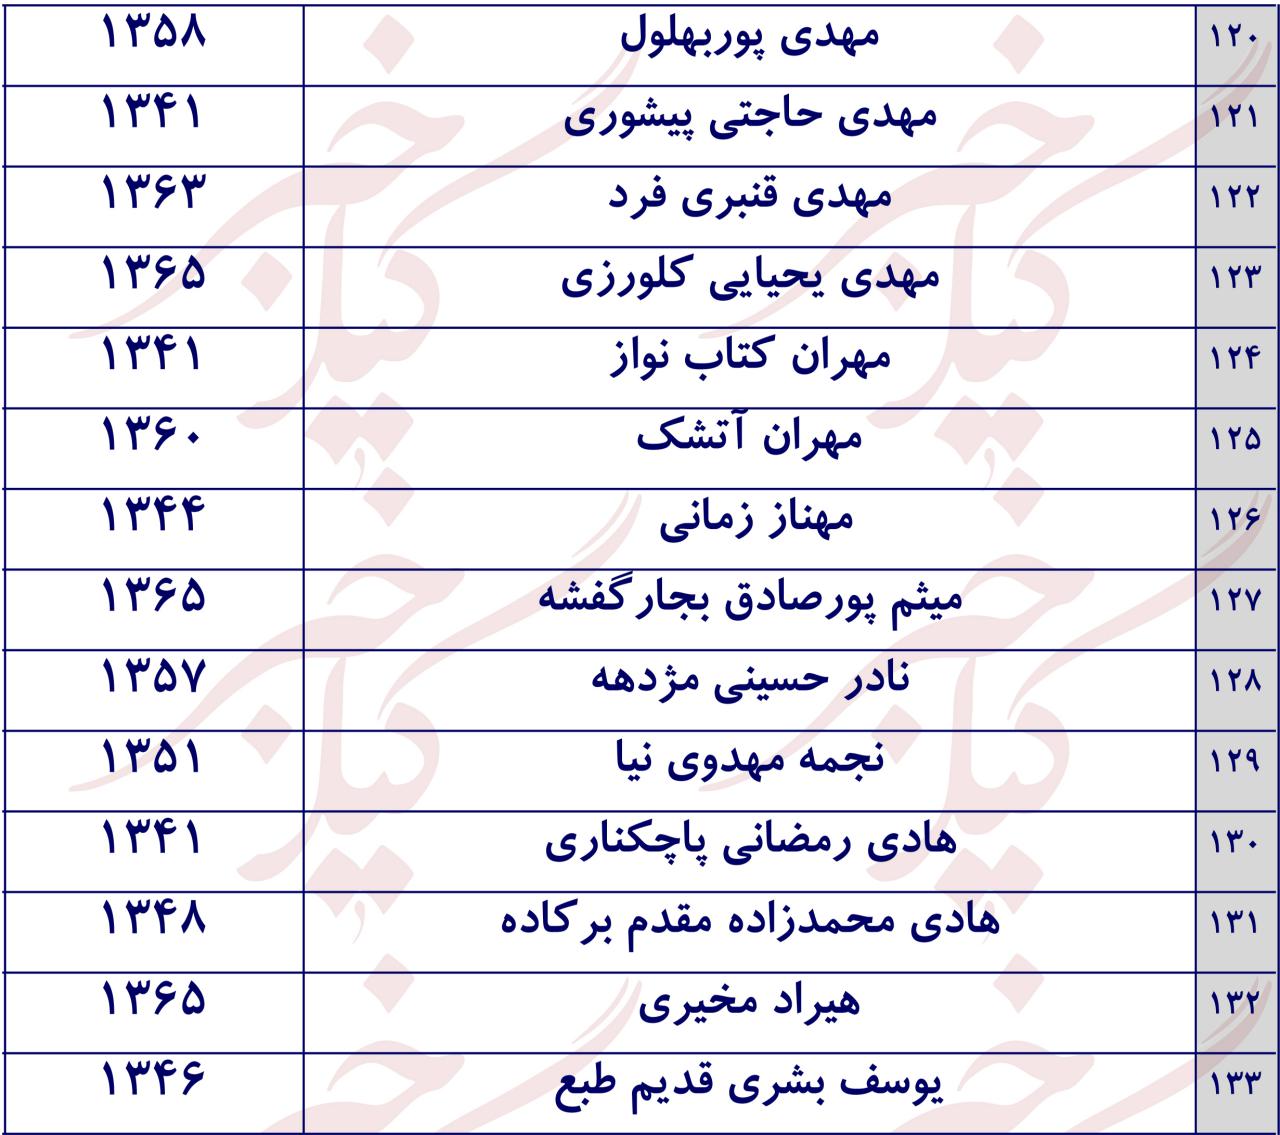 لیست کامل ۱۳۳ کاندیدای انتخابات مجلس در شهرستان رشت/ جدول